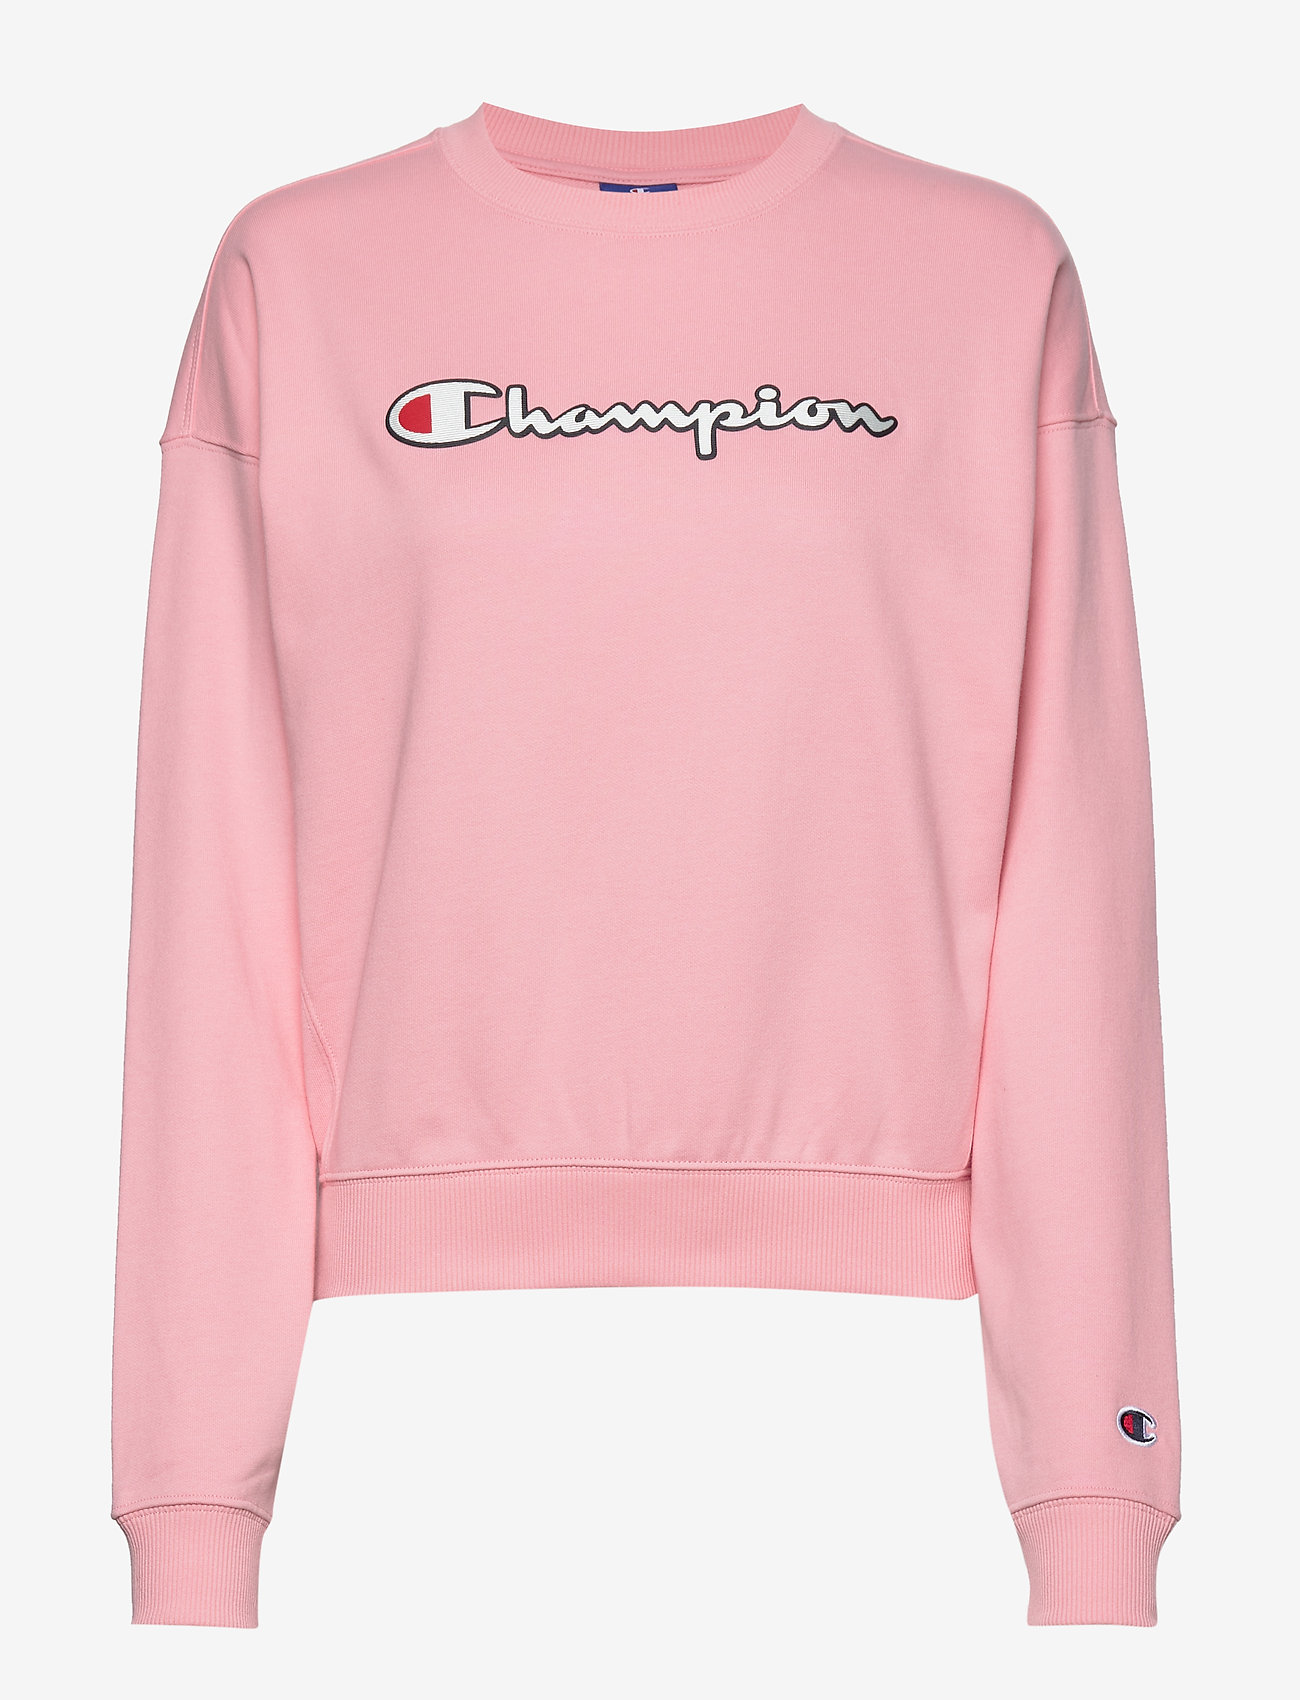 Pink crew neck sweatshirt